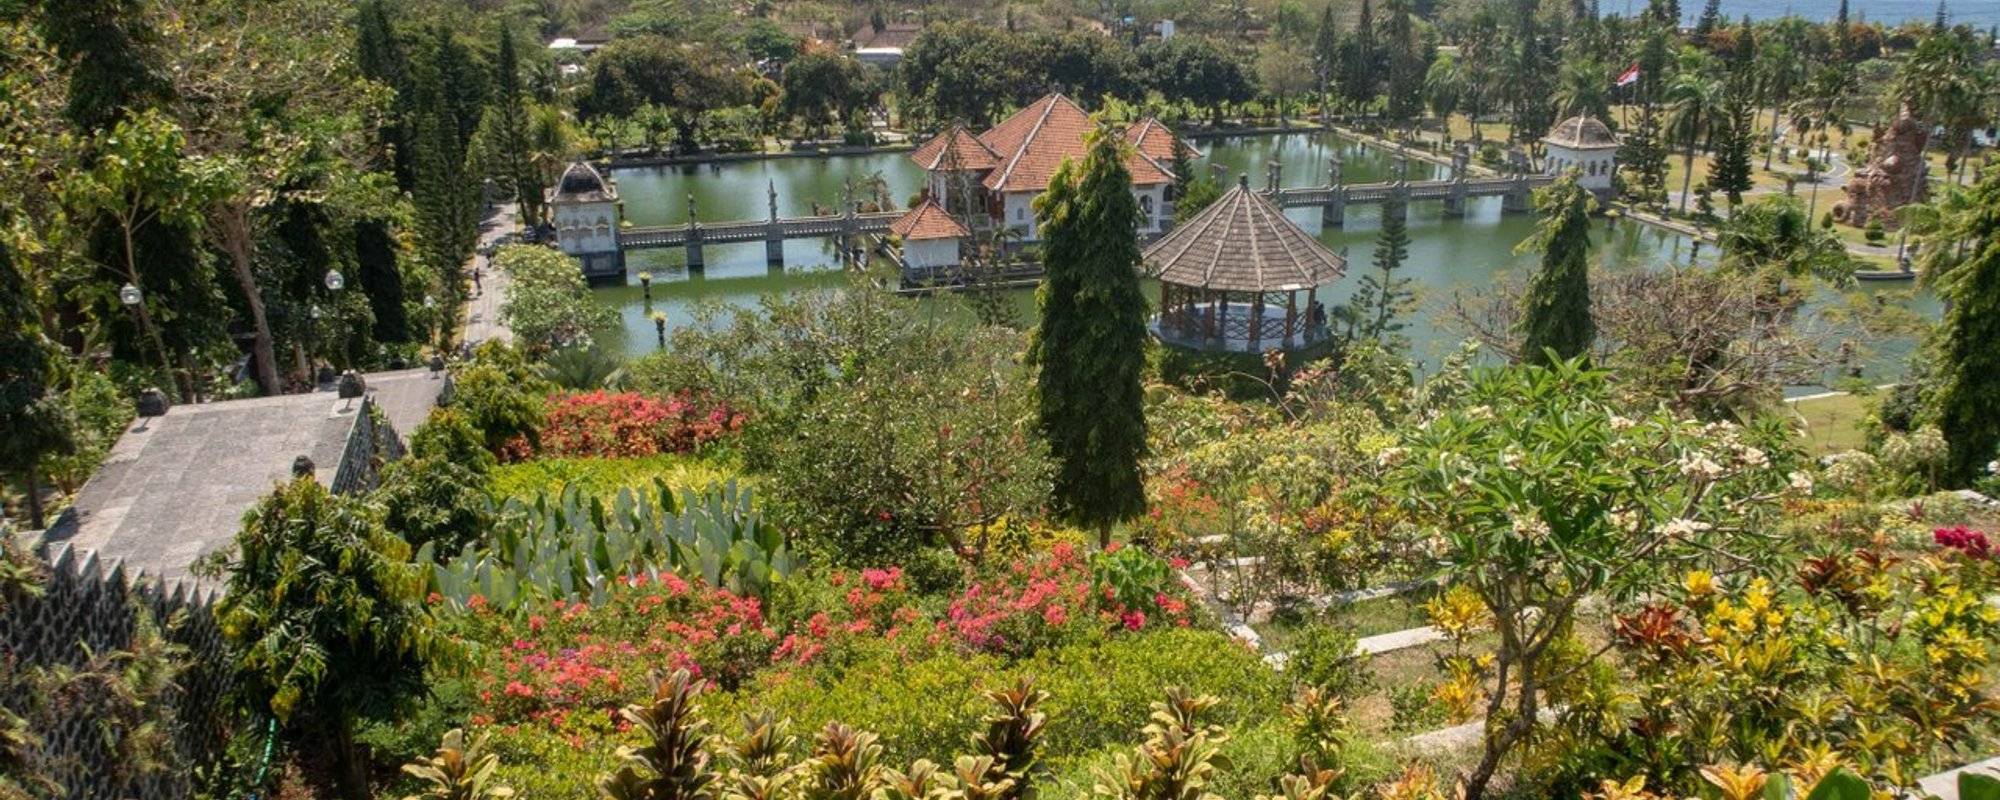 The Water Palace called Taman Ujung Sukasada